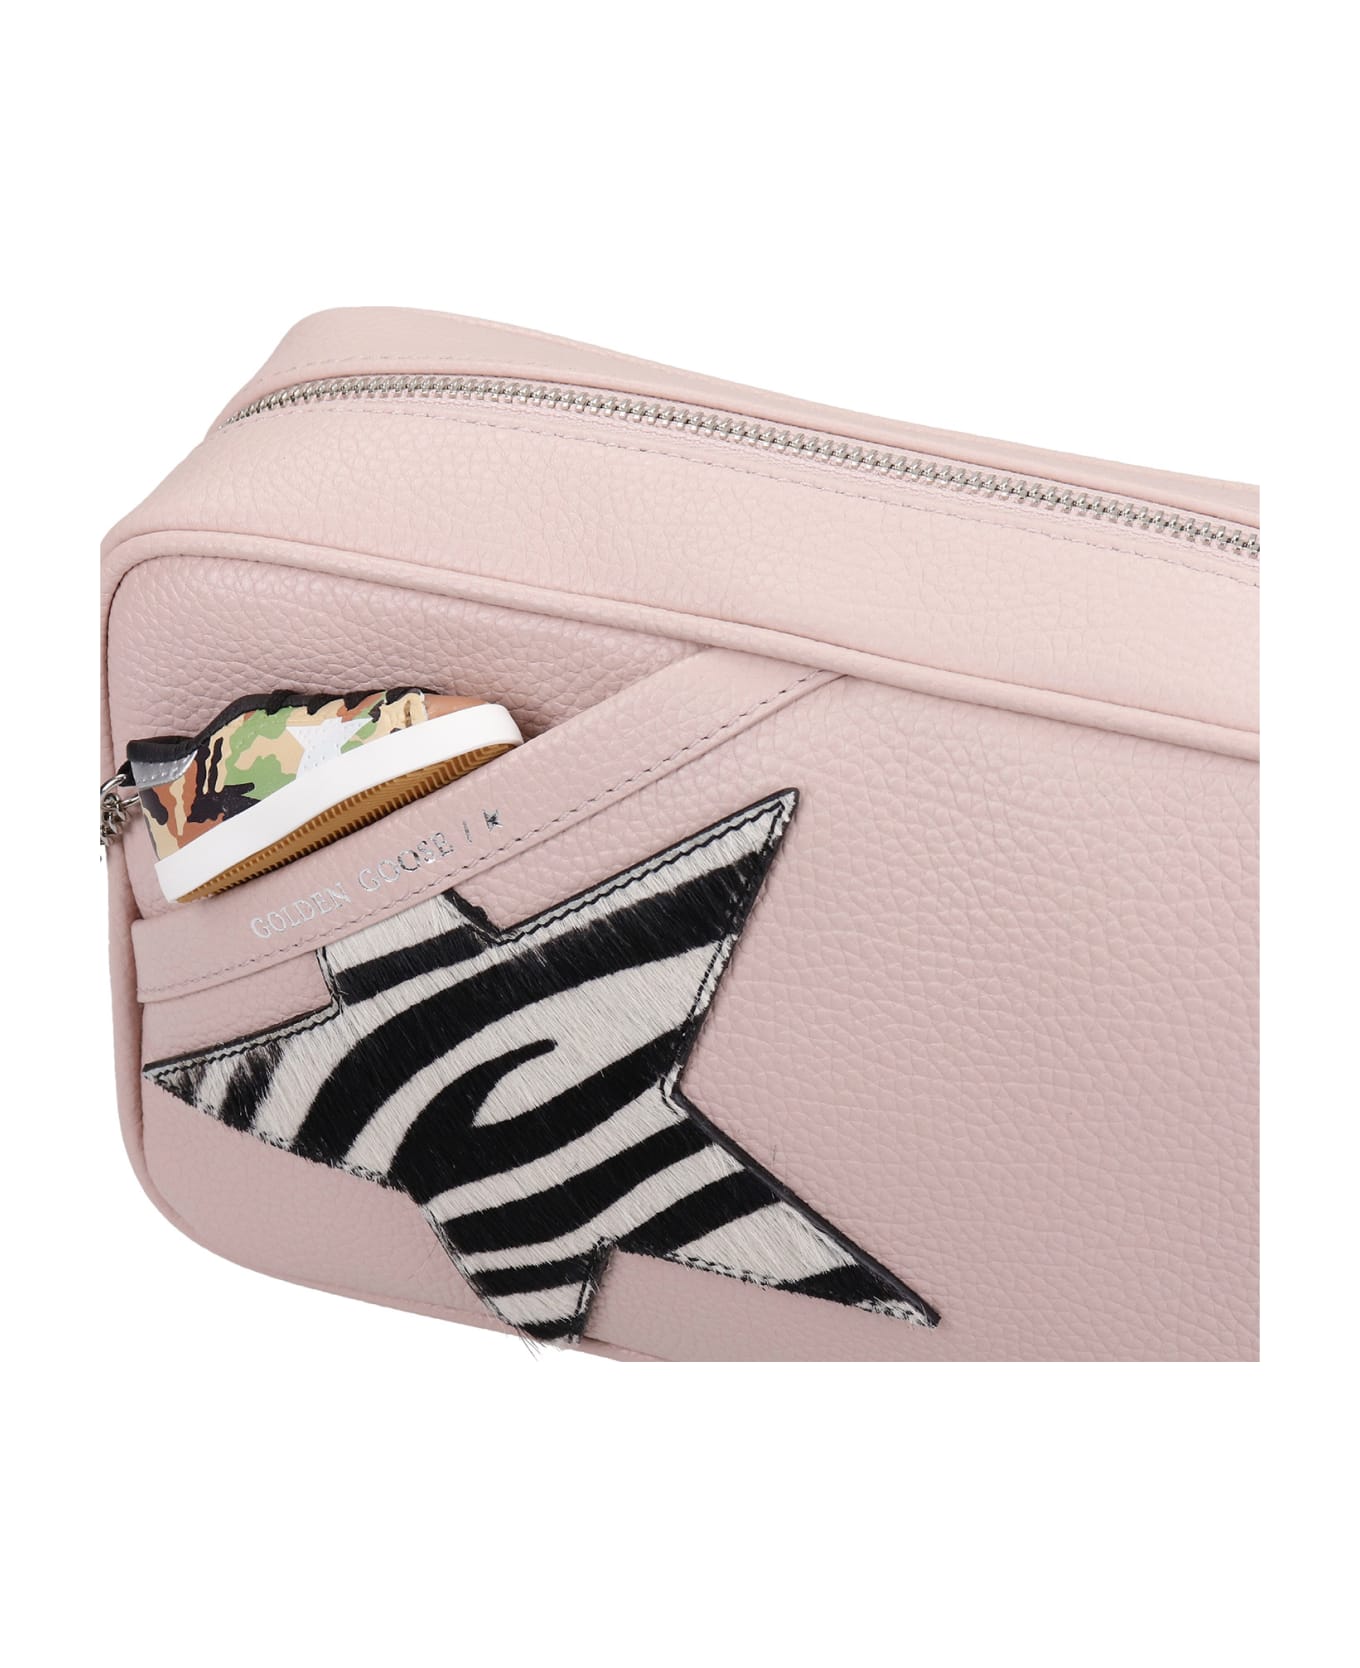 Golden Goose Star Bag Shoulder Bag In Rose-pink Leather - rose-pink